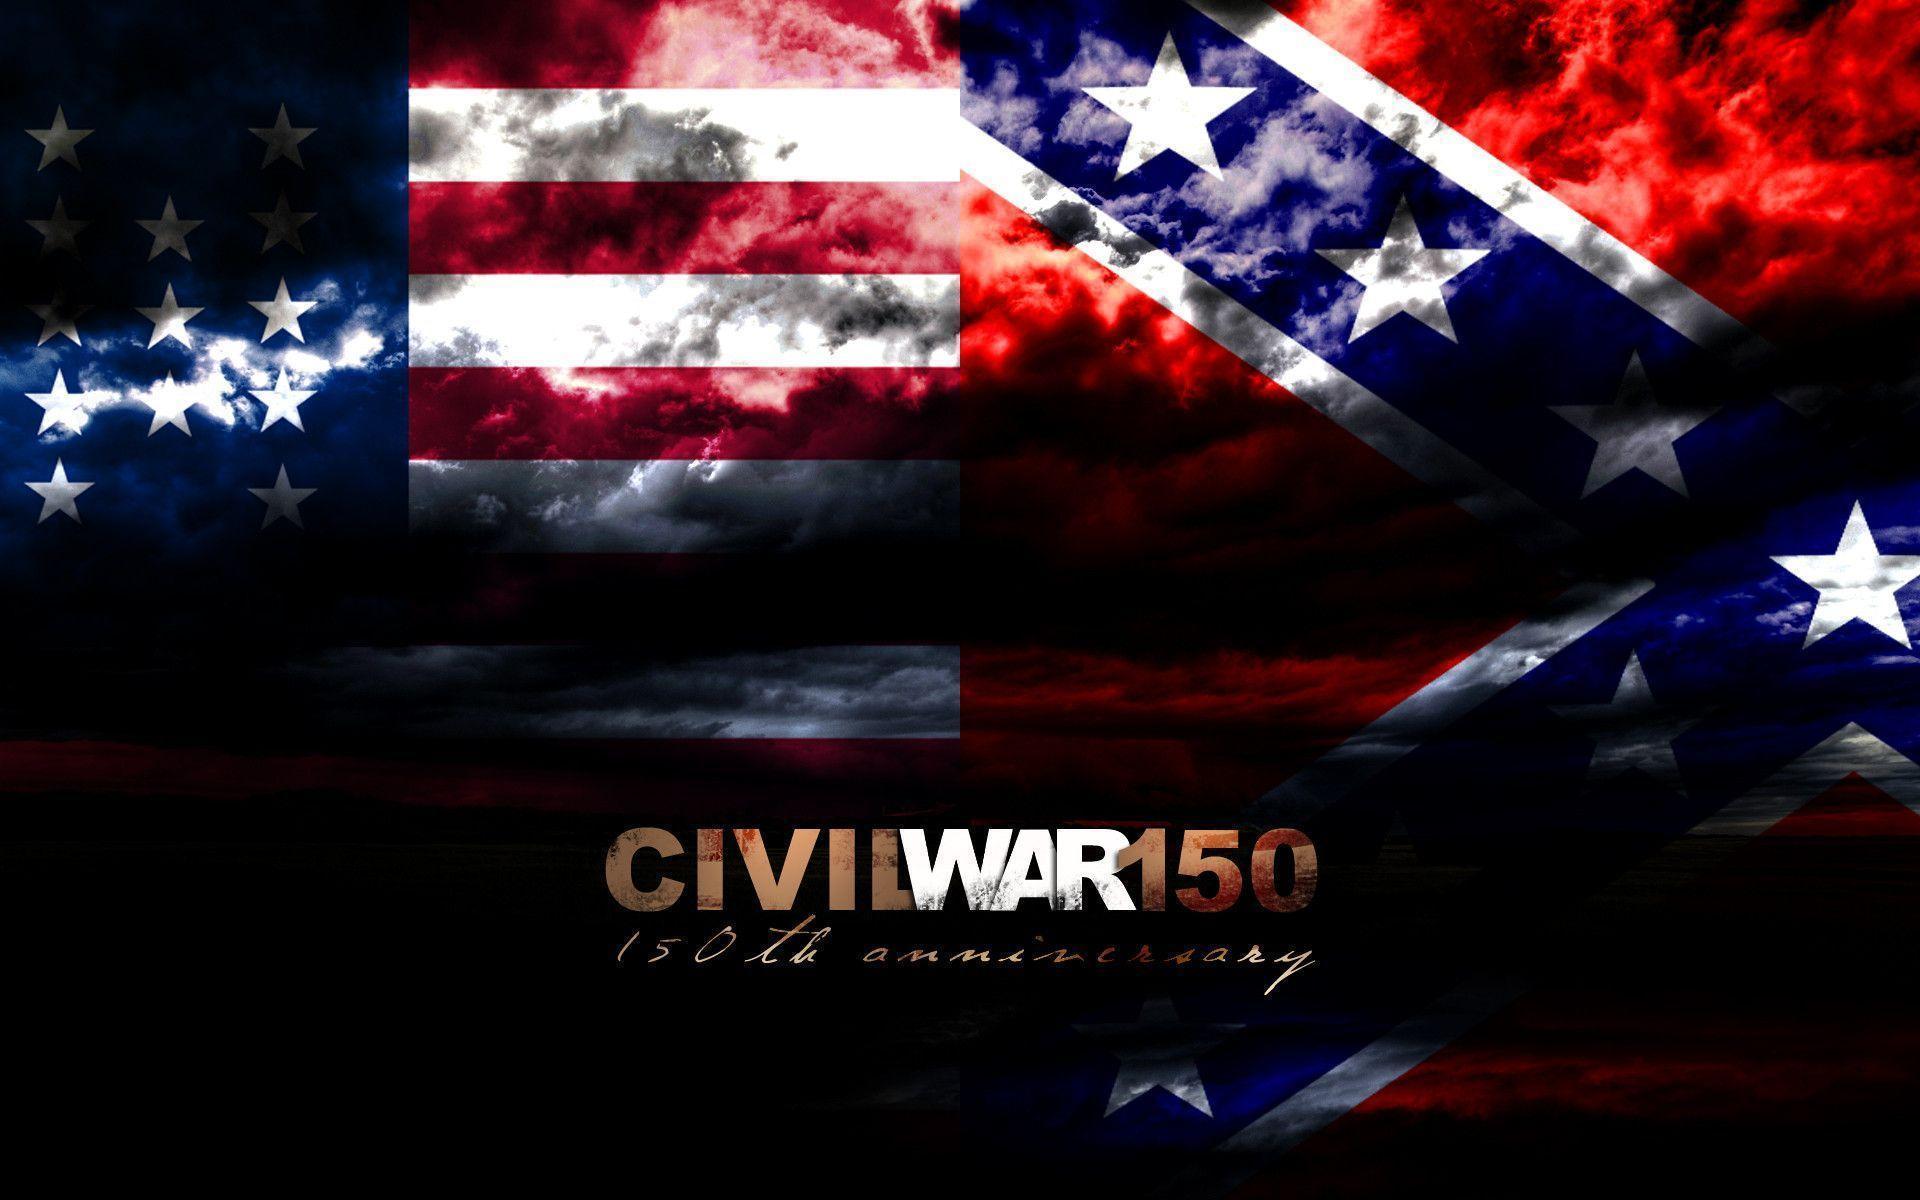 Wallpaper For > American Civil War Wallpaper